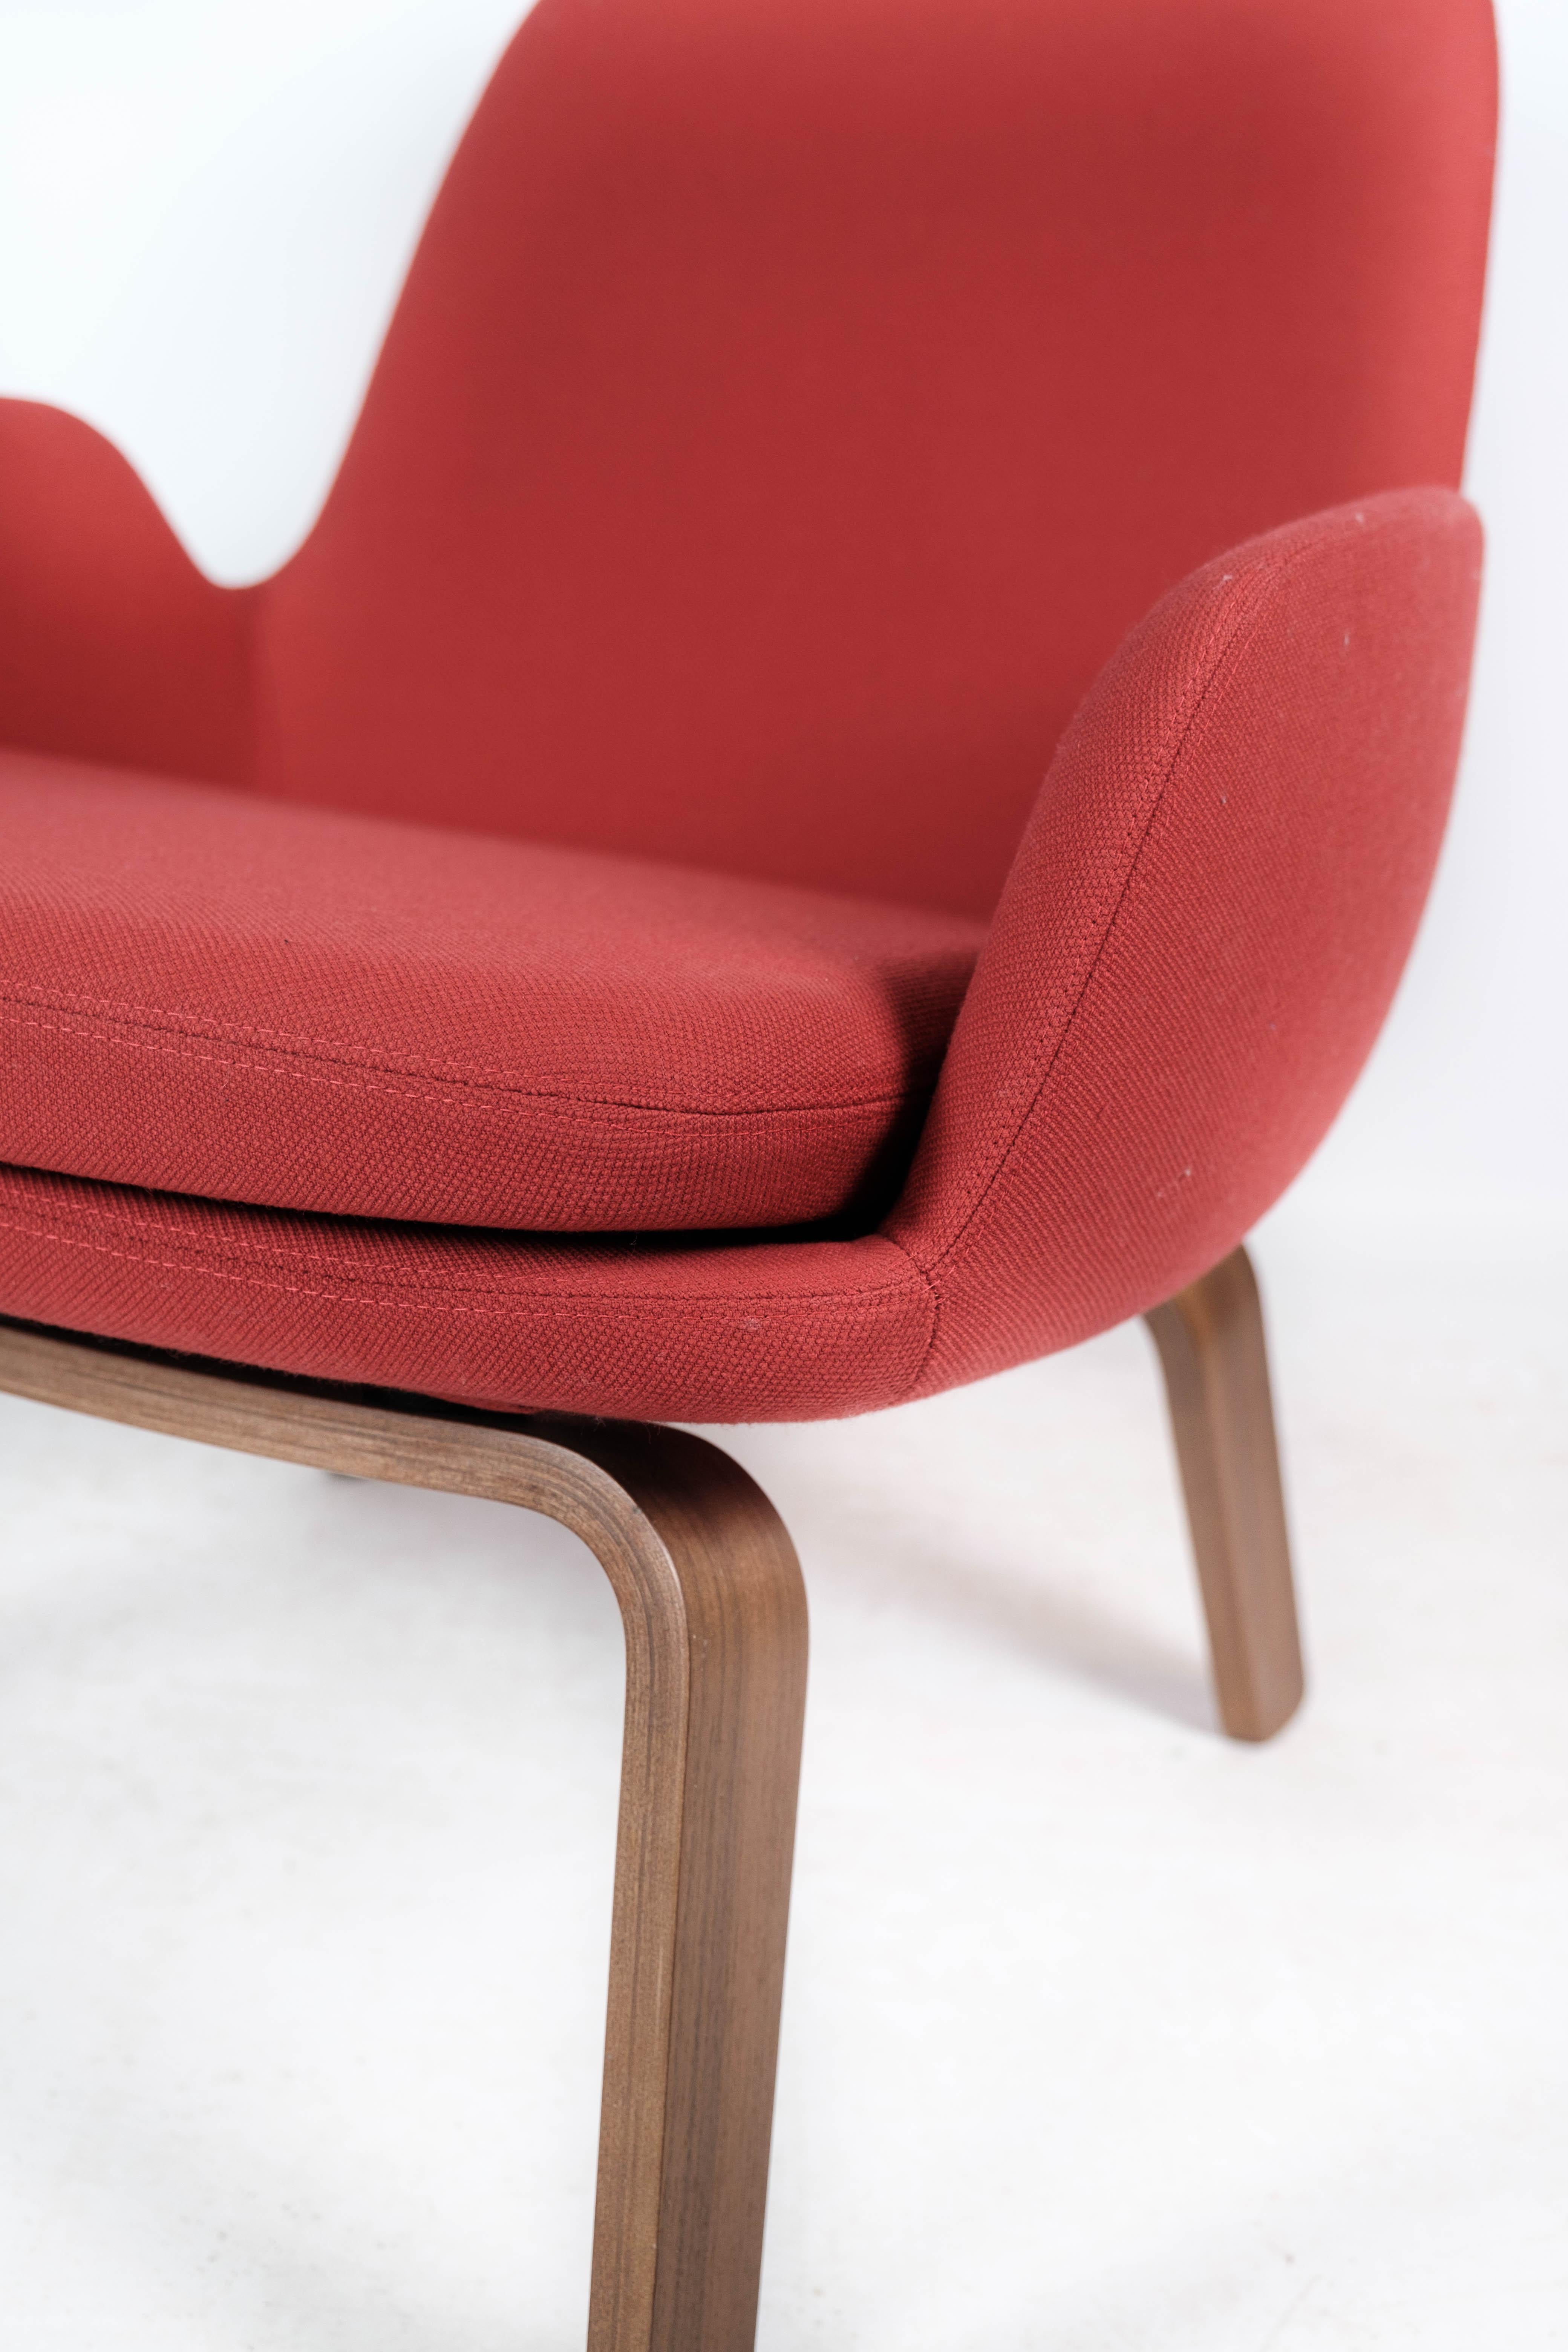 Scandinavian Modern Easy Chair with Legs of Walnut by Normann Copenhagen For Sale